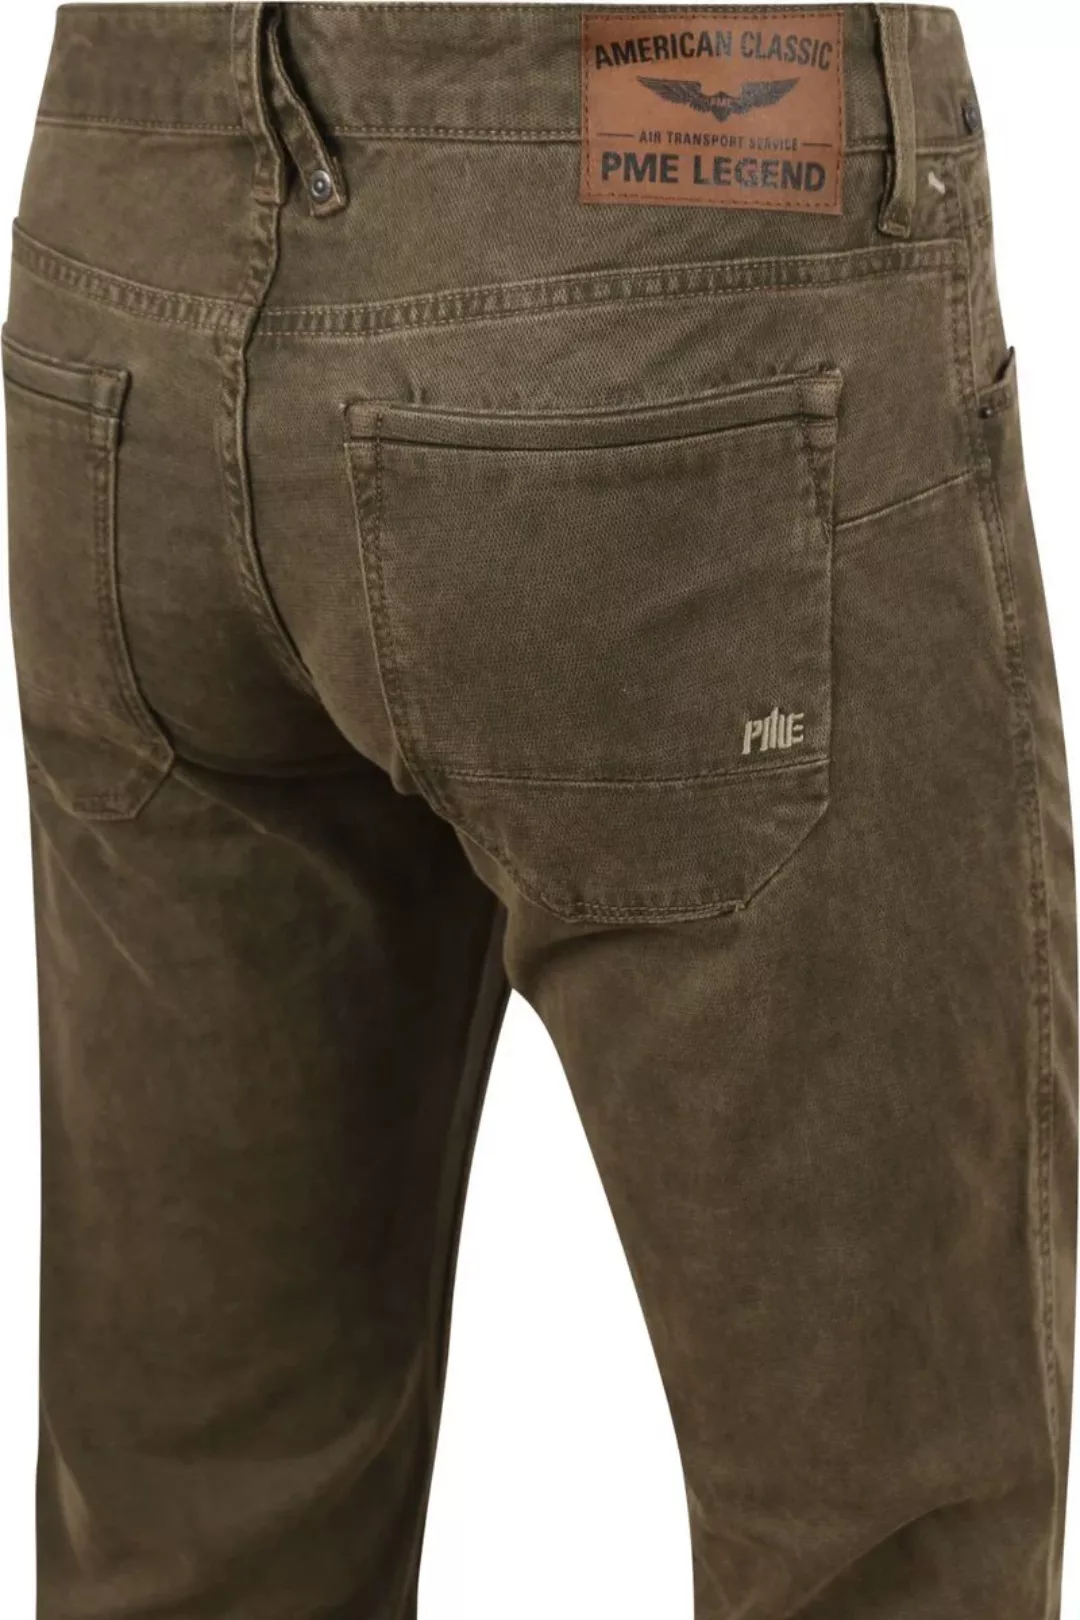 PME Legend Nightflight Jeans Olivgrün - Größe W 32 - L 30 günstig online kaufen